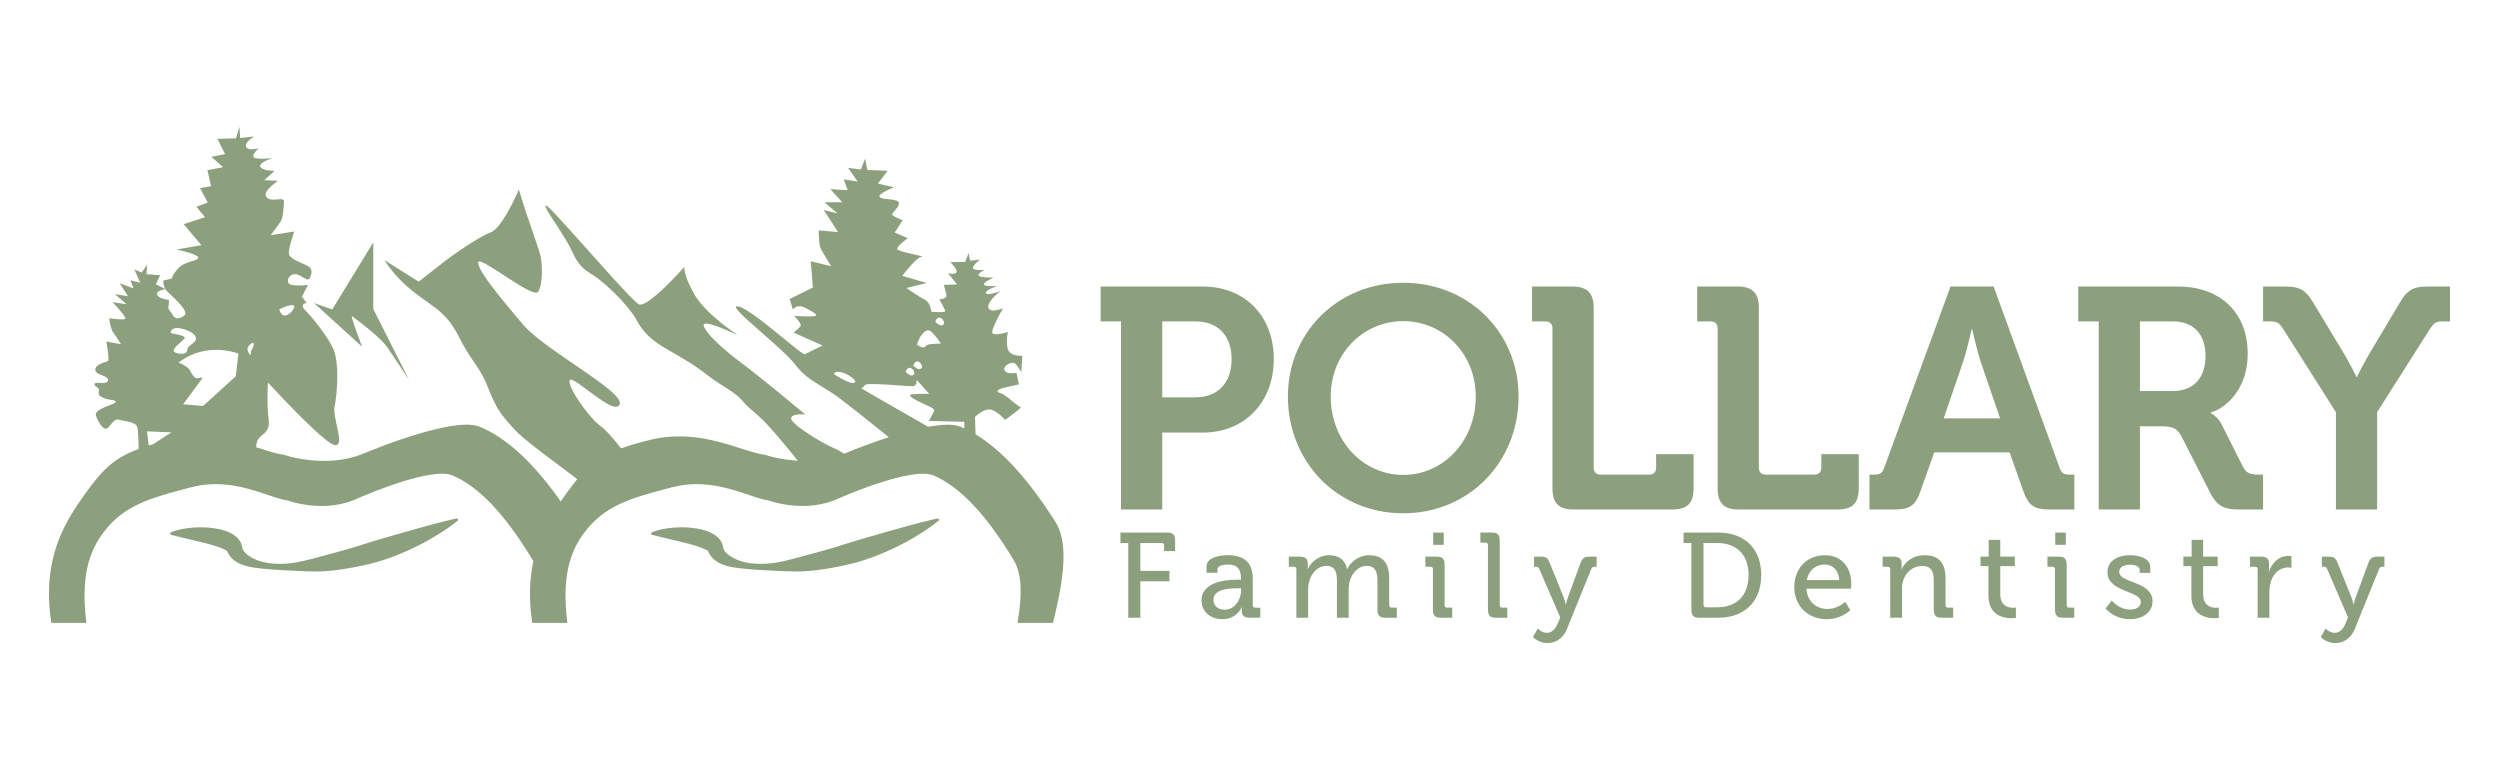 Company logo of Pollary Family Dentistry